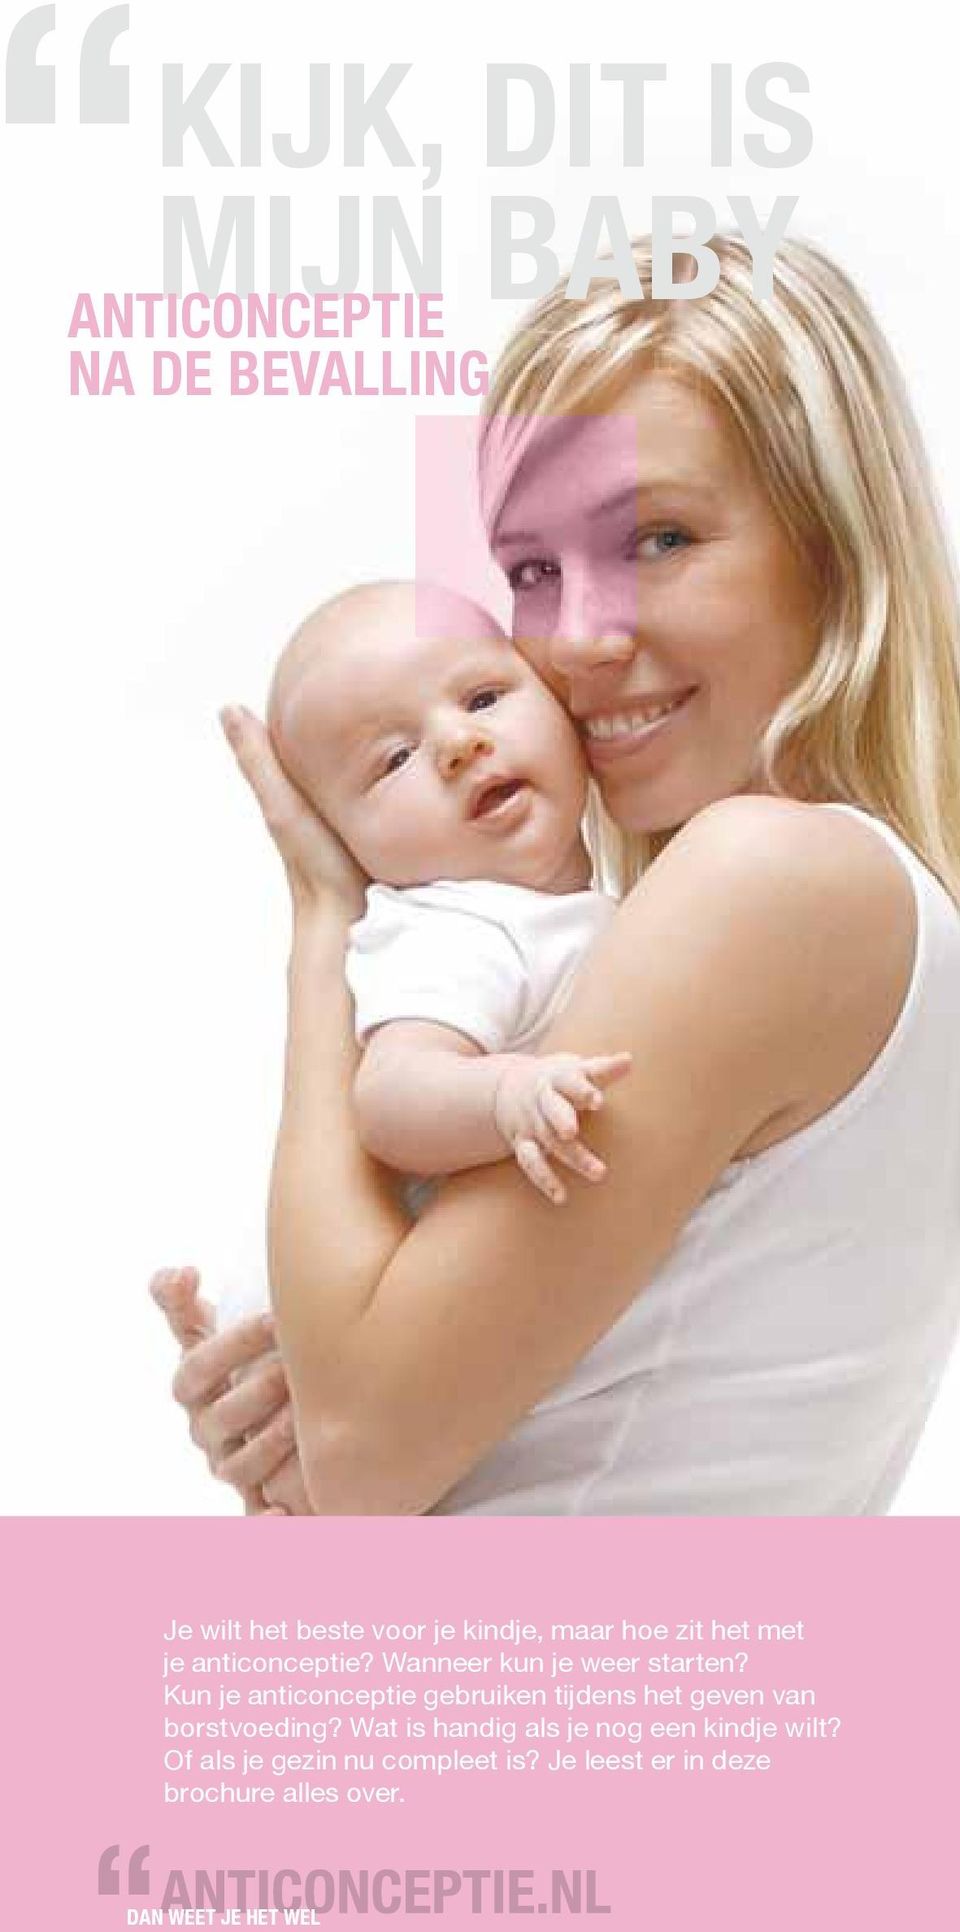 Kun je anticonceptie gebruiken tijdens het geven van borstvoeding?